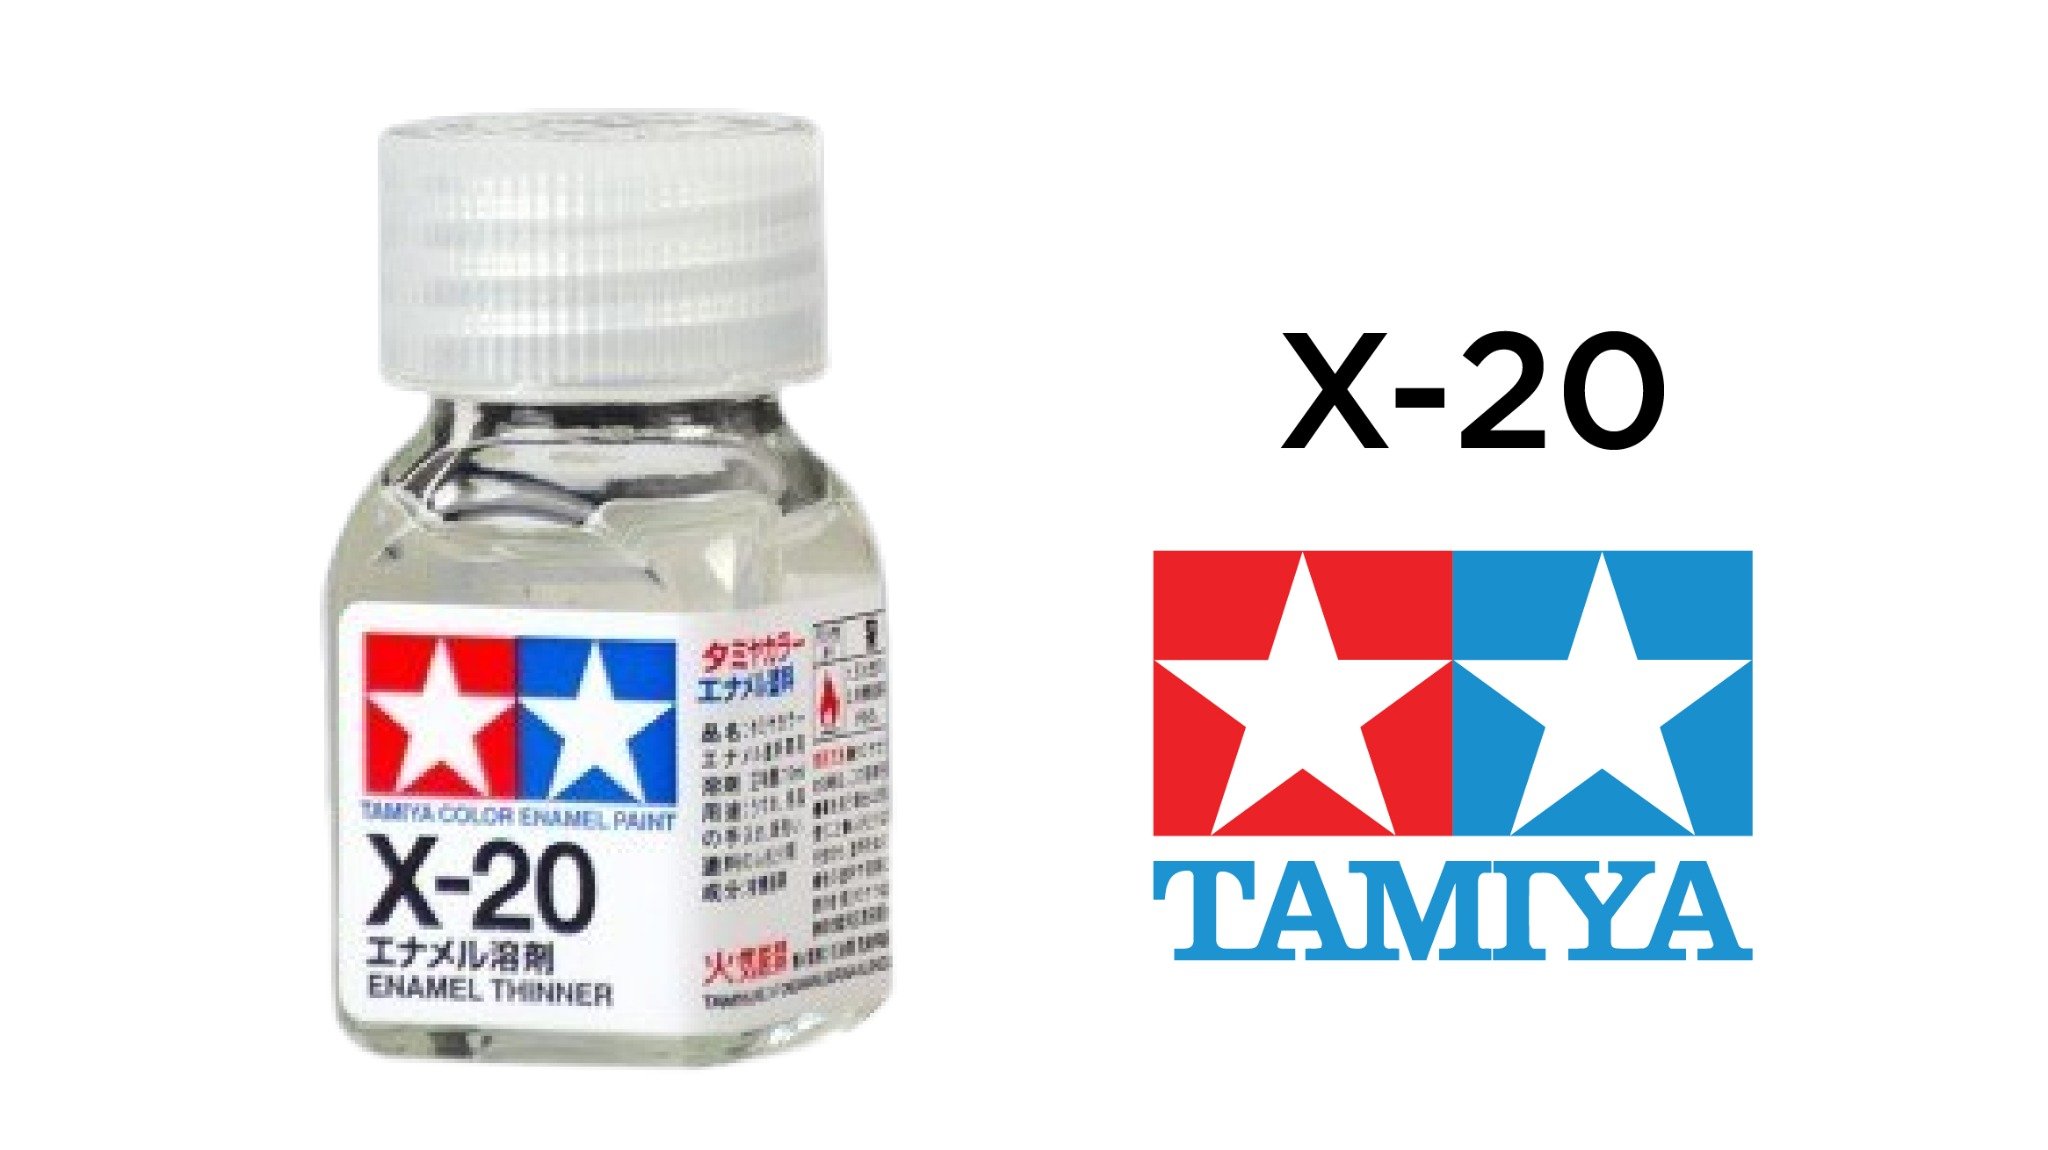  Enamel x20 thinner dung dịch pha sơn thinner gốc enamel 10ml Tamiya 80020 